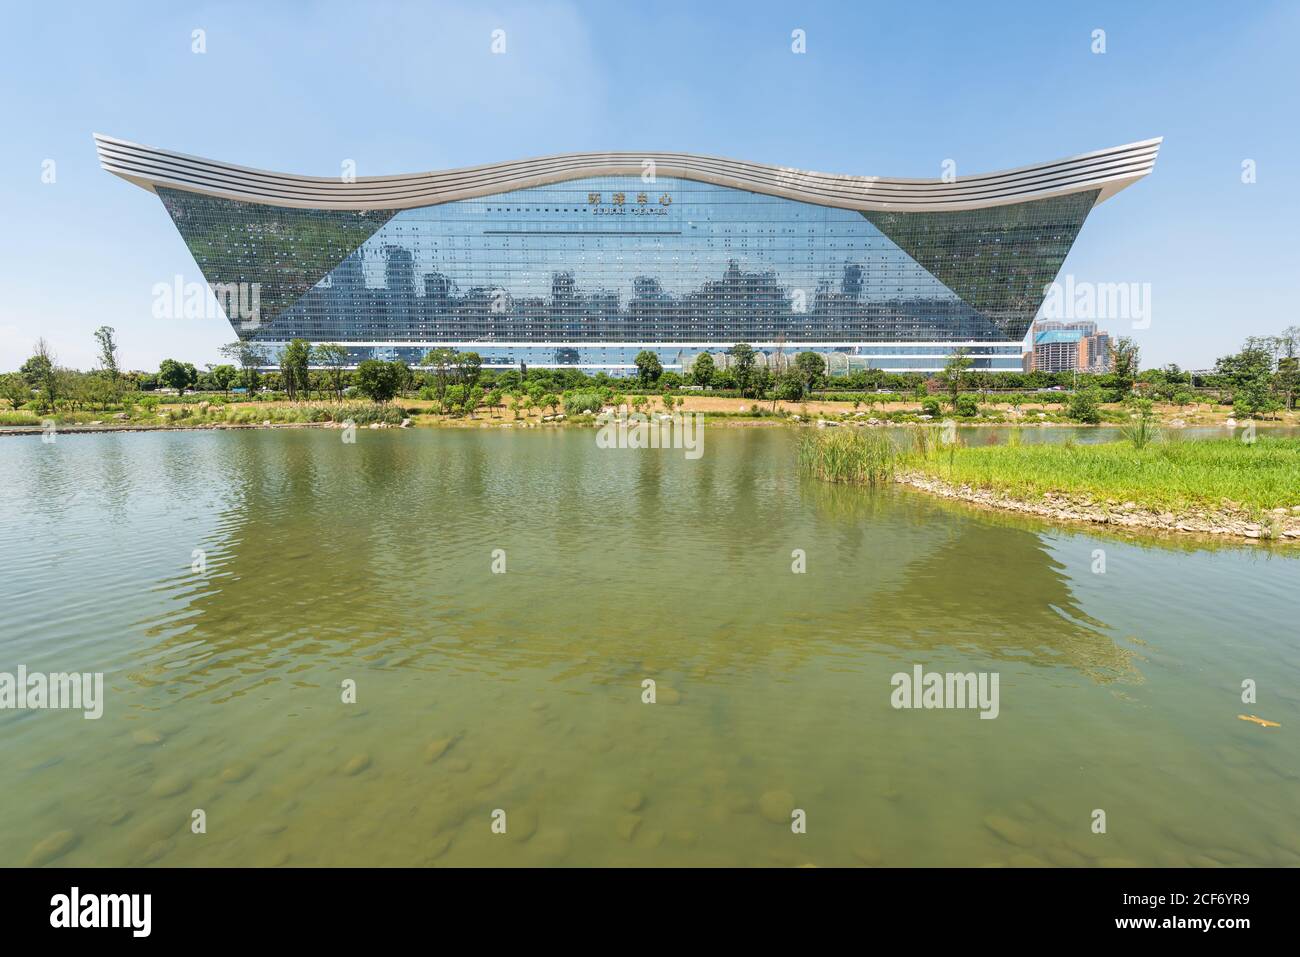 Chengdu, Provinz Sichuan, China - 26. Aug 2020 : Gebäude des New Century Global Center, das an einem sonnigen Tag mit klarem blauen Himmel in einem See reflektiert wird Stockfoto